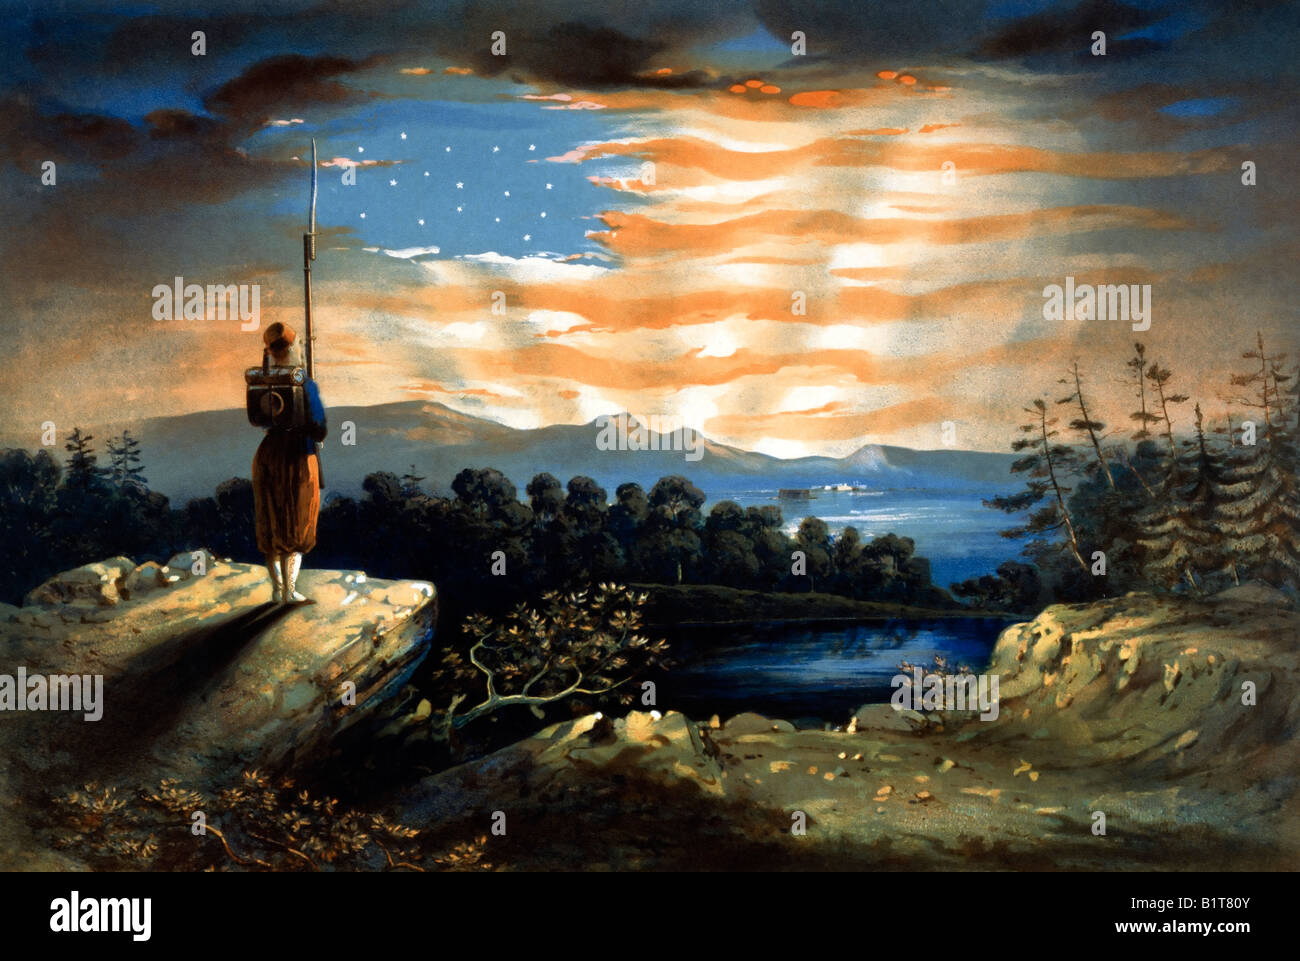 Unsere Banner - USA Bürgerkrieg Ära print zeigt amerikanische Flagge bilden in den Himmel als Soldat geboren Himmel blickt auf Stockfoto